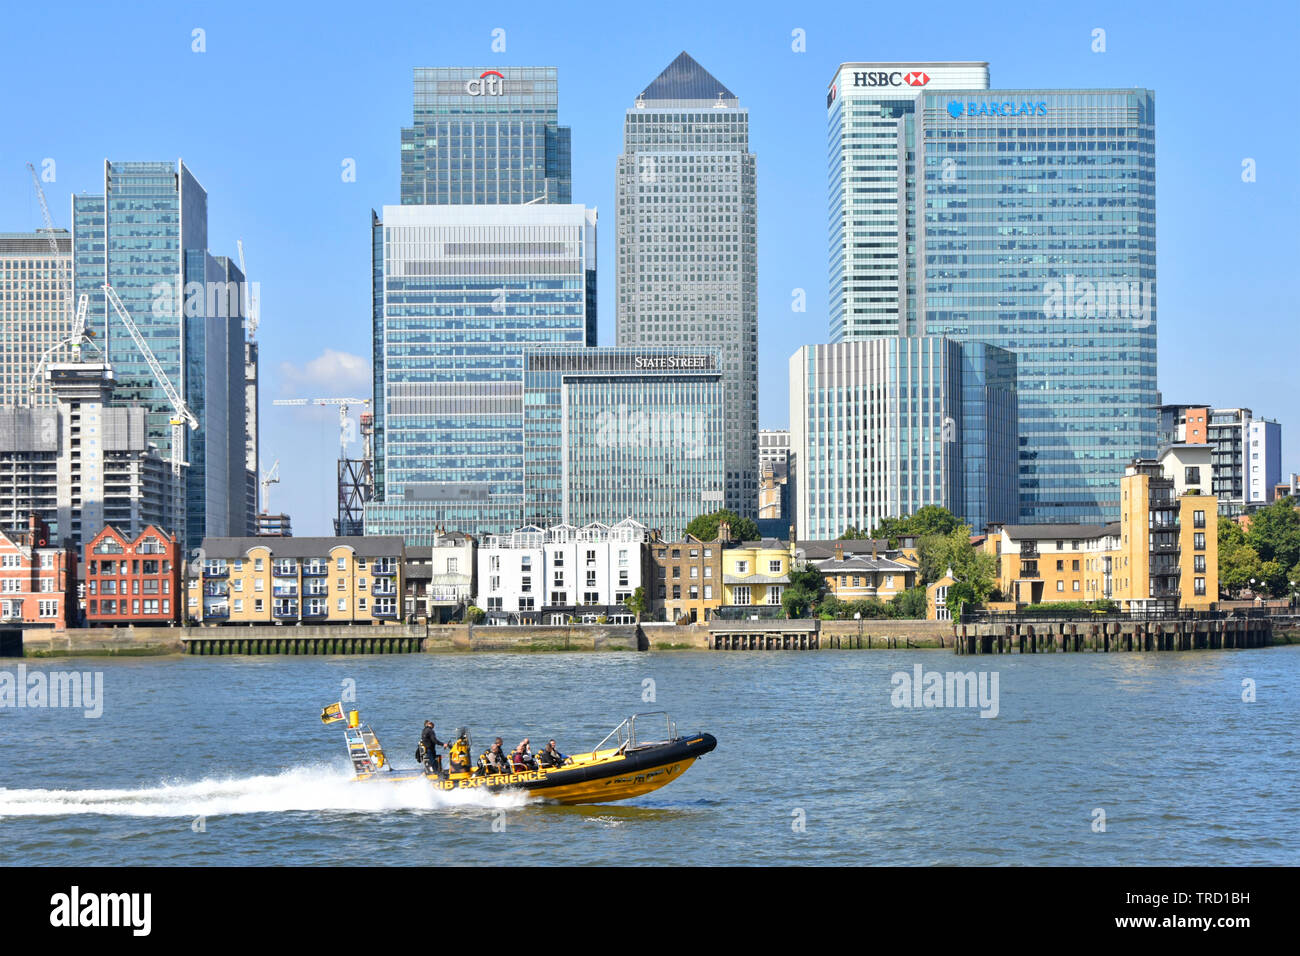 Thames esperienza di nervatura turisti speedboat passando moderno grattacielo landmark edifici sul Canary Wharf, Isle of Dogs London Docklands skyline England Regno Unito Foto Stock